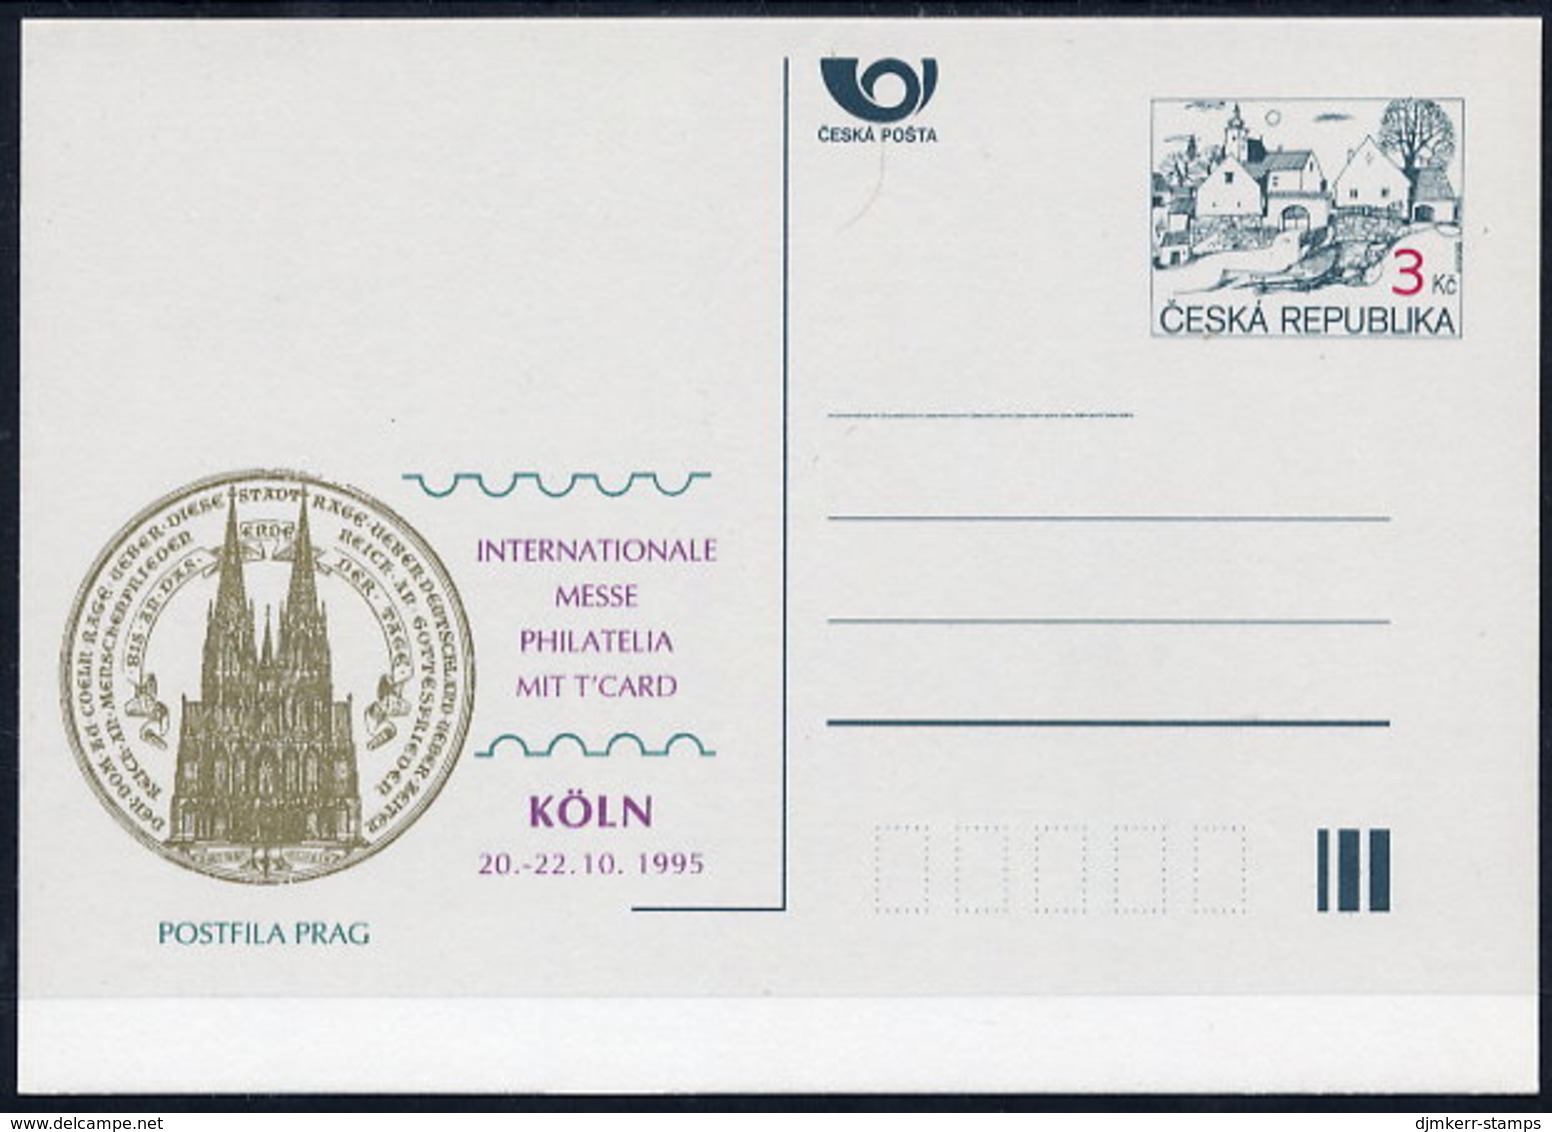 CZECH REPUBLIC 1995 3 Kc.postcard Köln '95 Unused.  Michel P7-A5 - Ansichtskarten